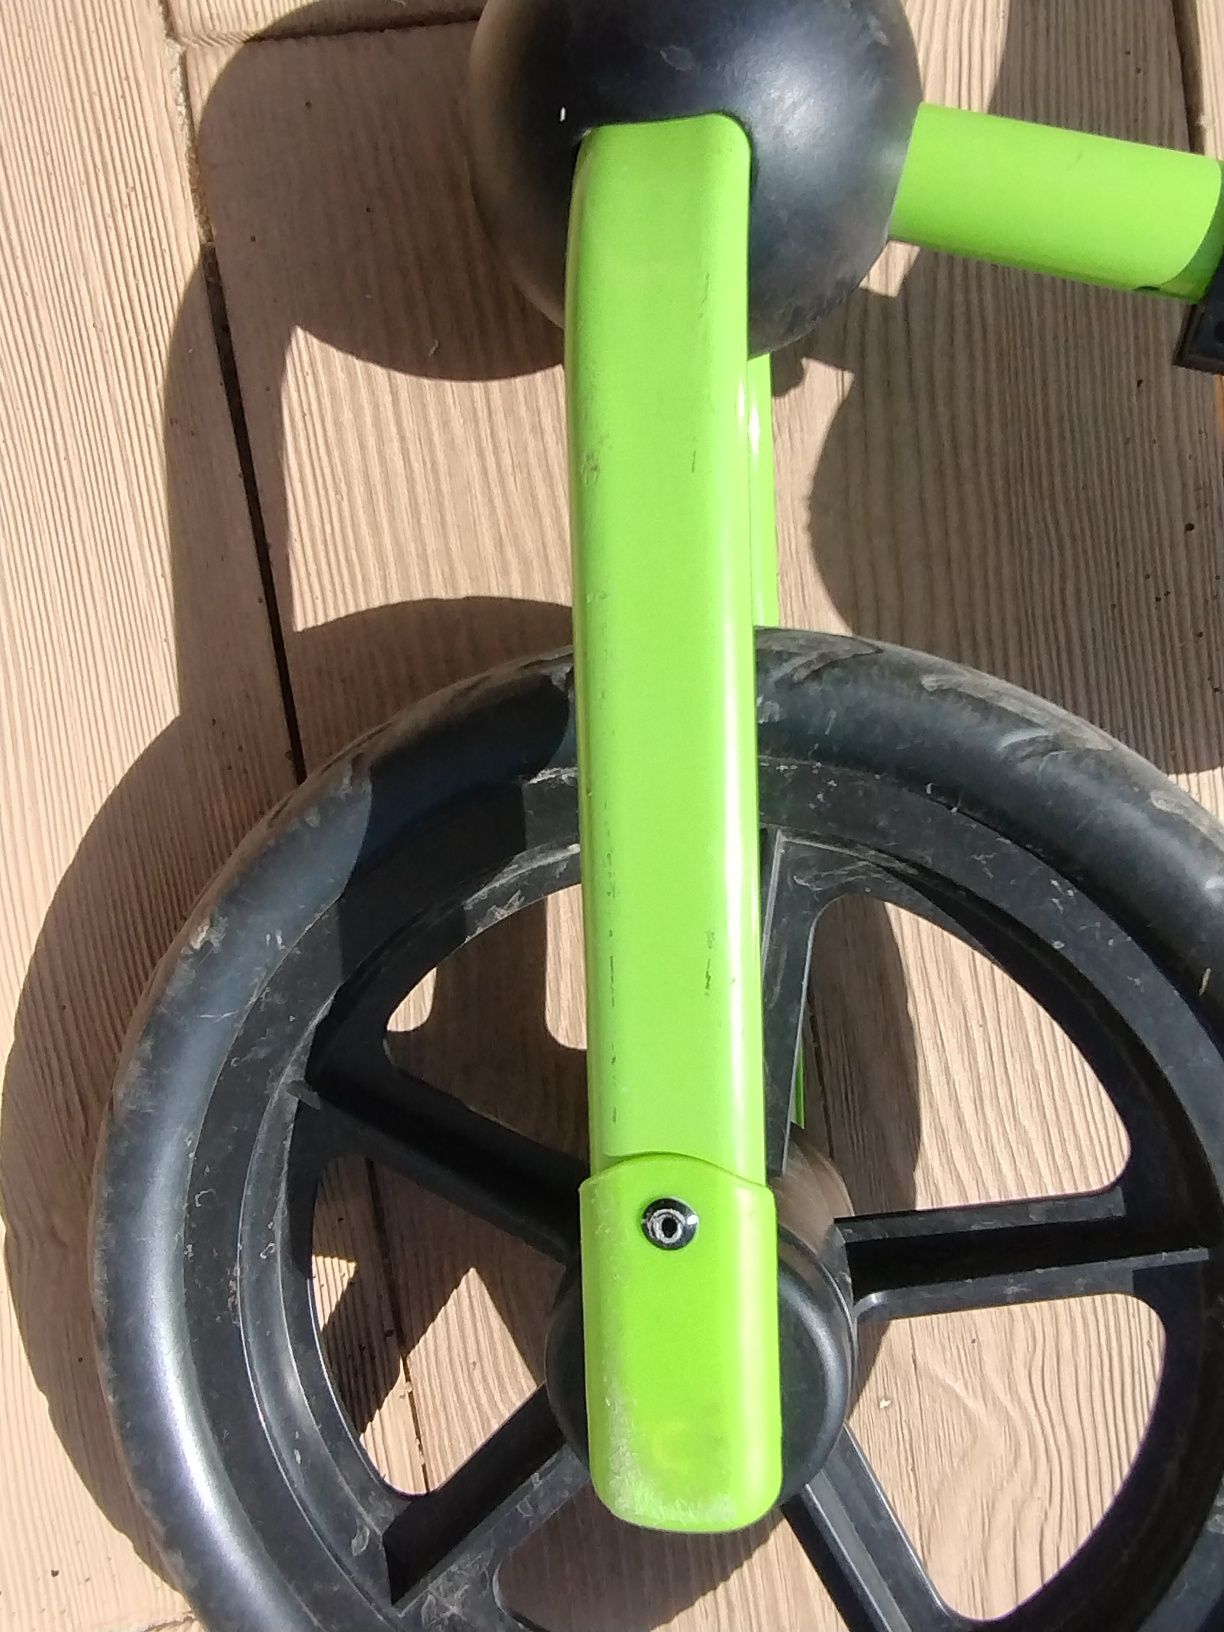 Rowerek biegowy Kinderkraft zielony